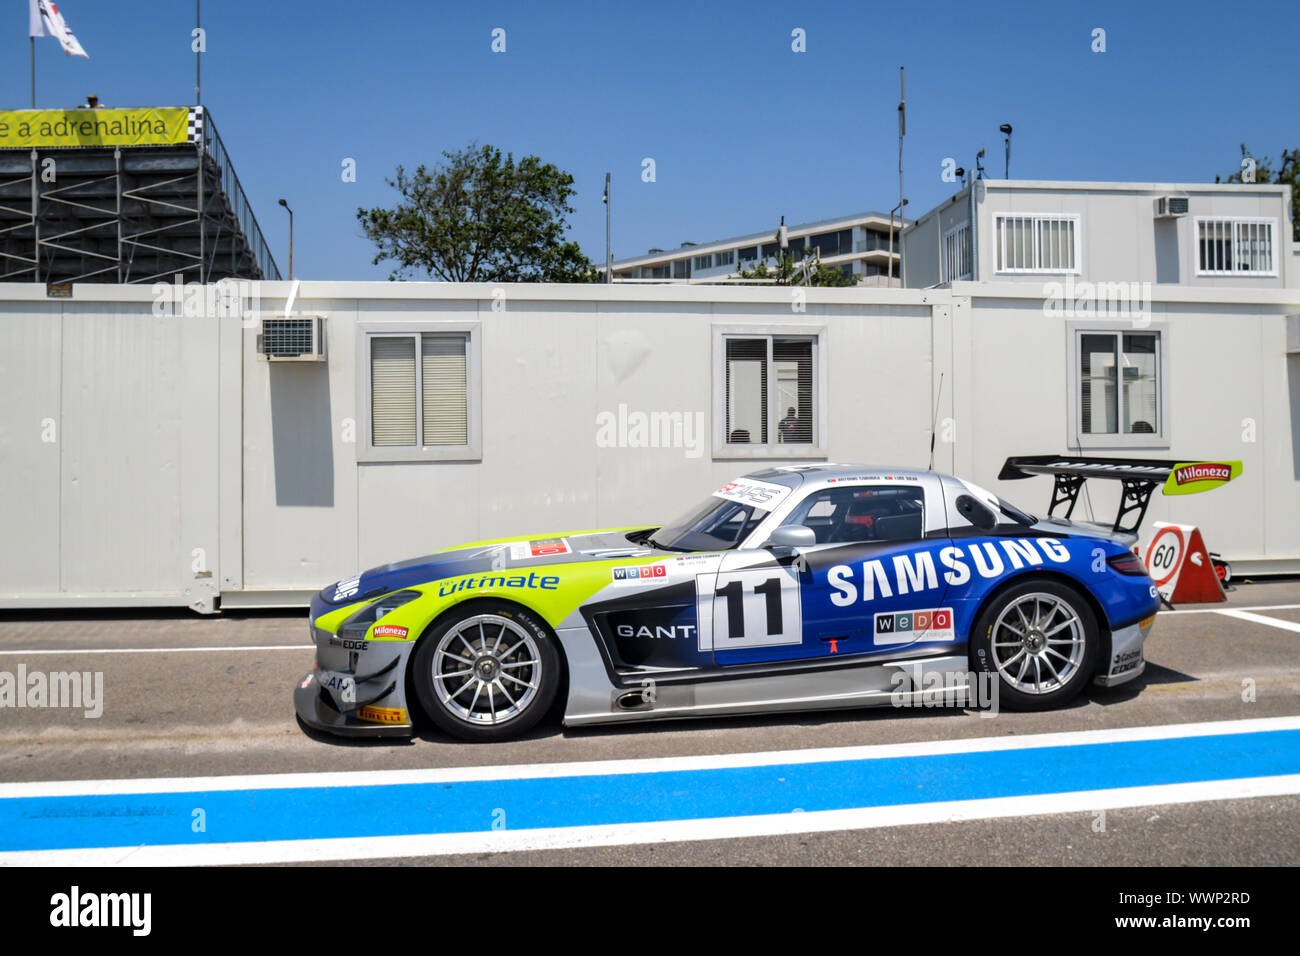 Mercedes Racing car padock Stock Photo